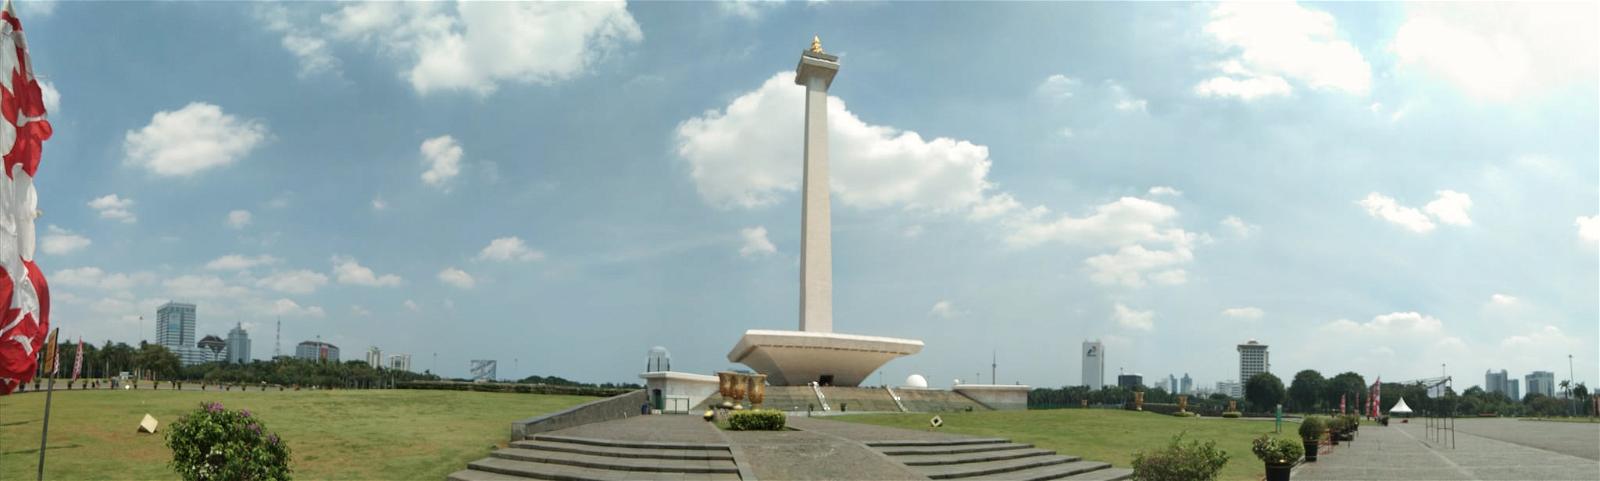 Monumen Nasional の画像. 